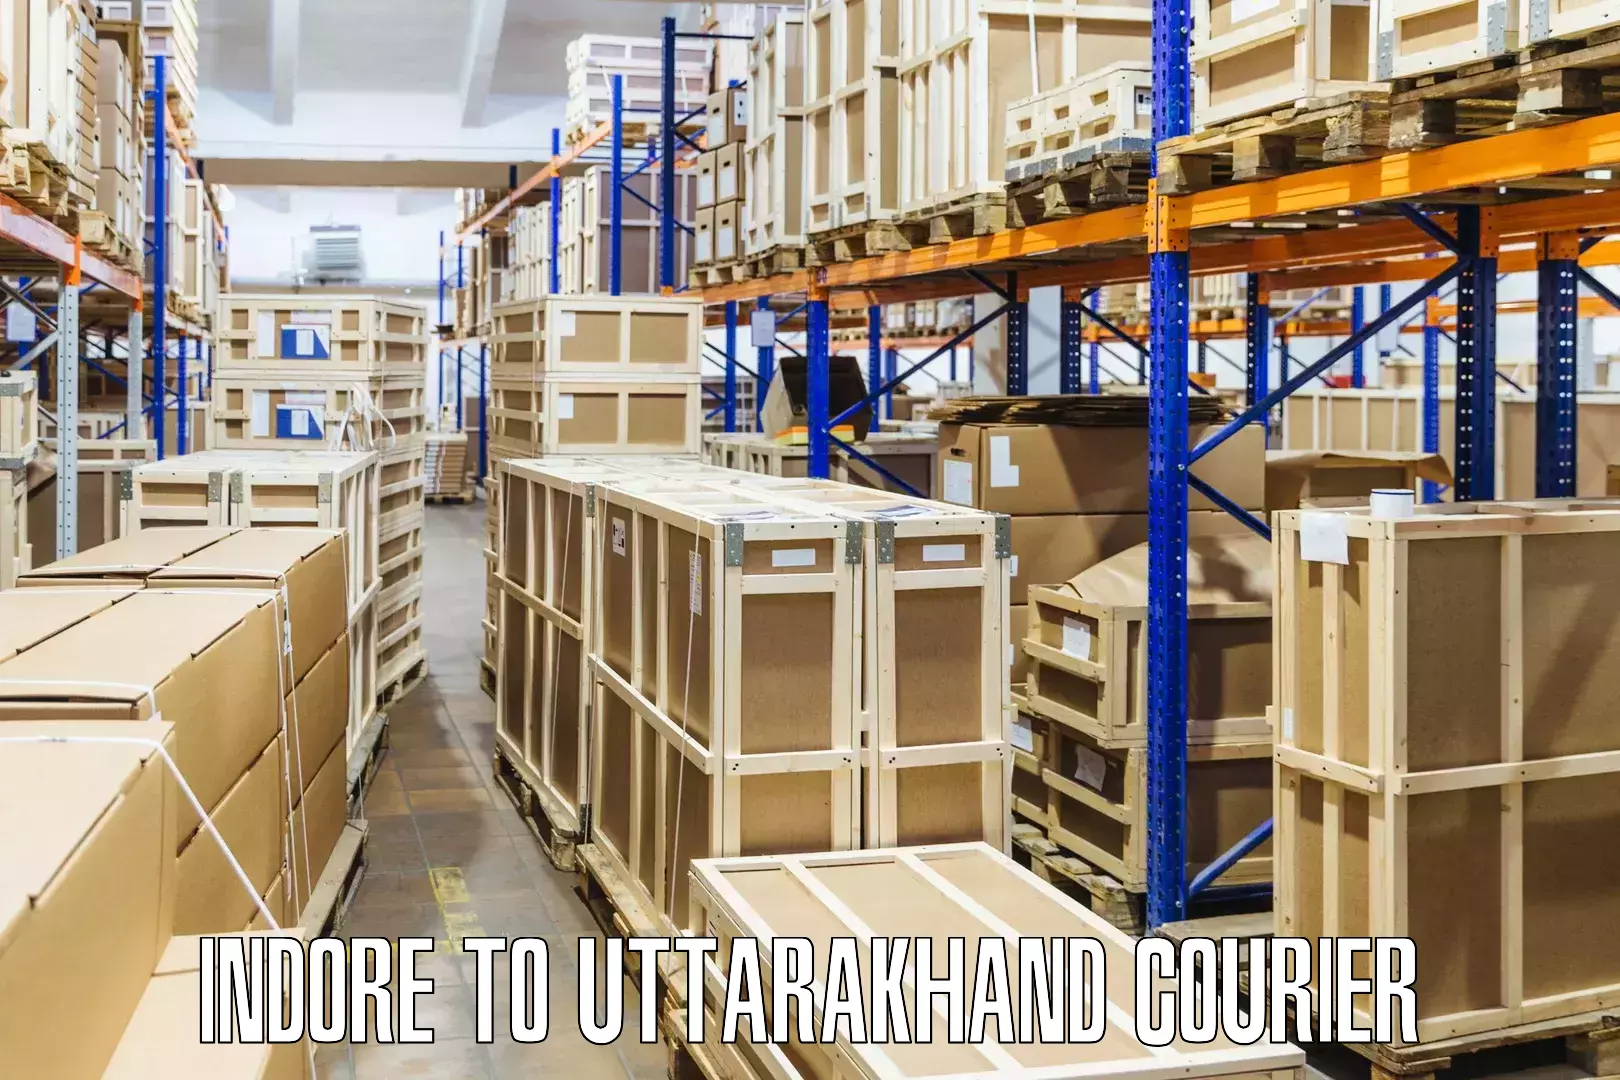 Quality courier partnerships Indore to Uttarakhand